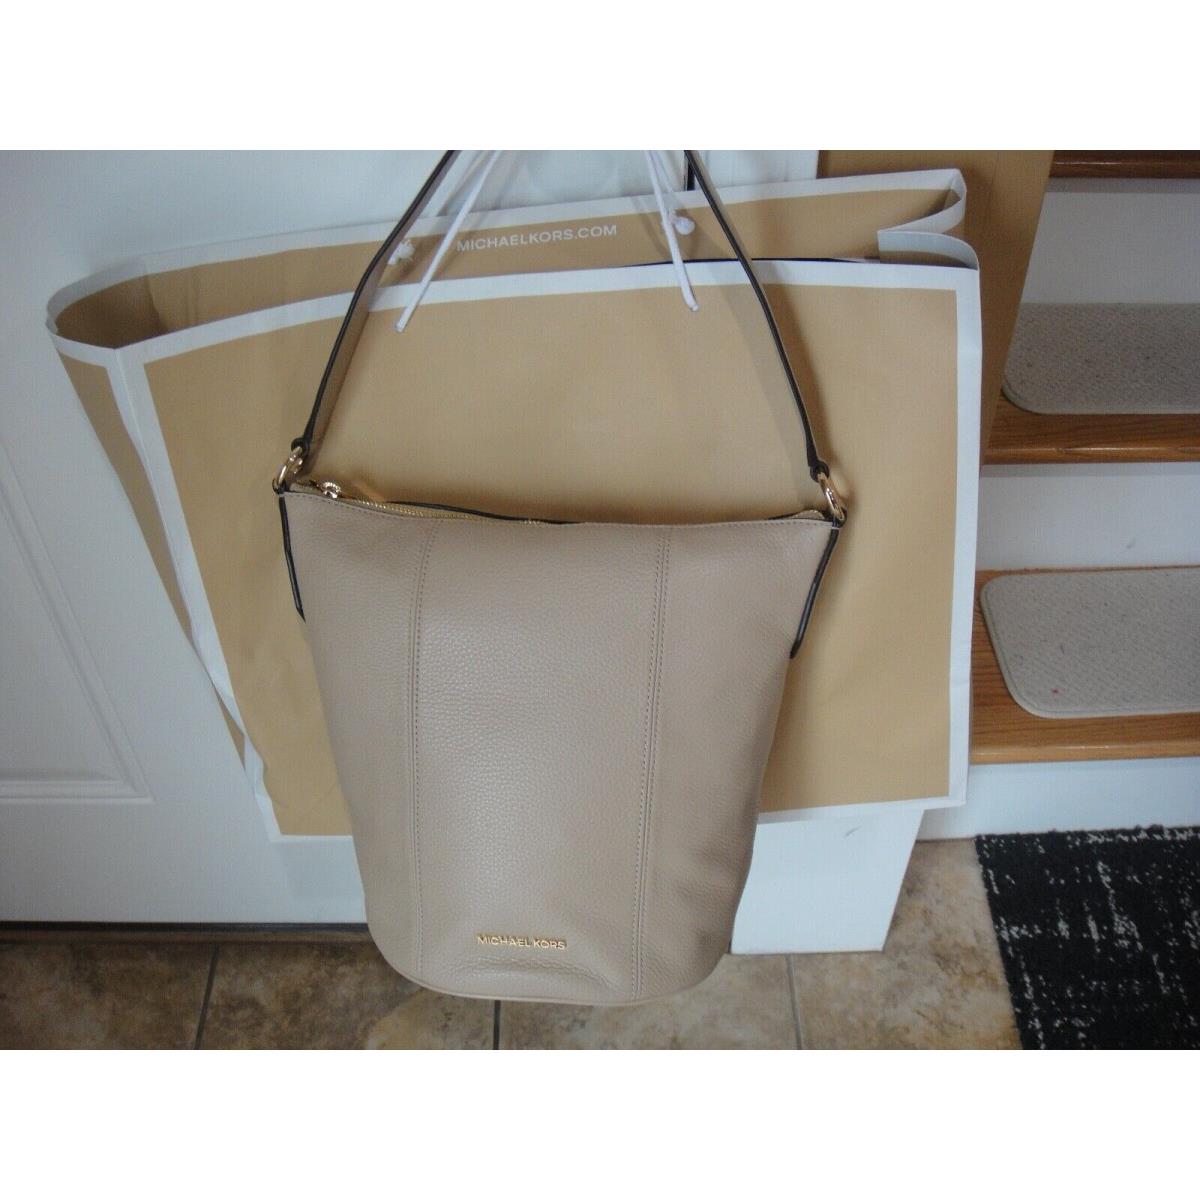 Michael Kors Brooke Medium Leather Hobo / Bucket bag.$378.00.100%